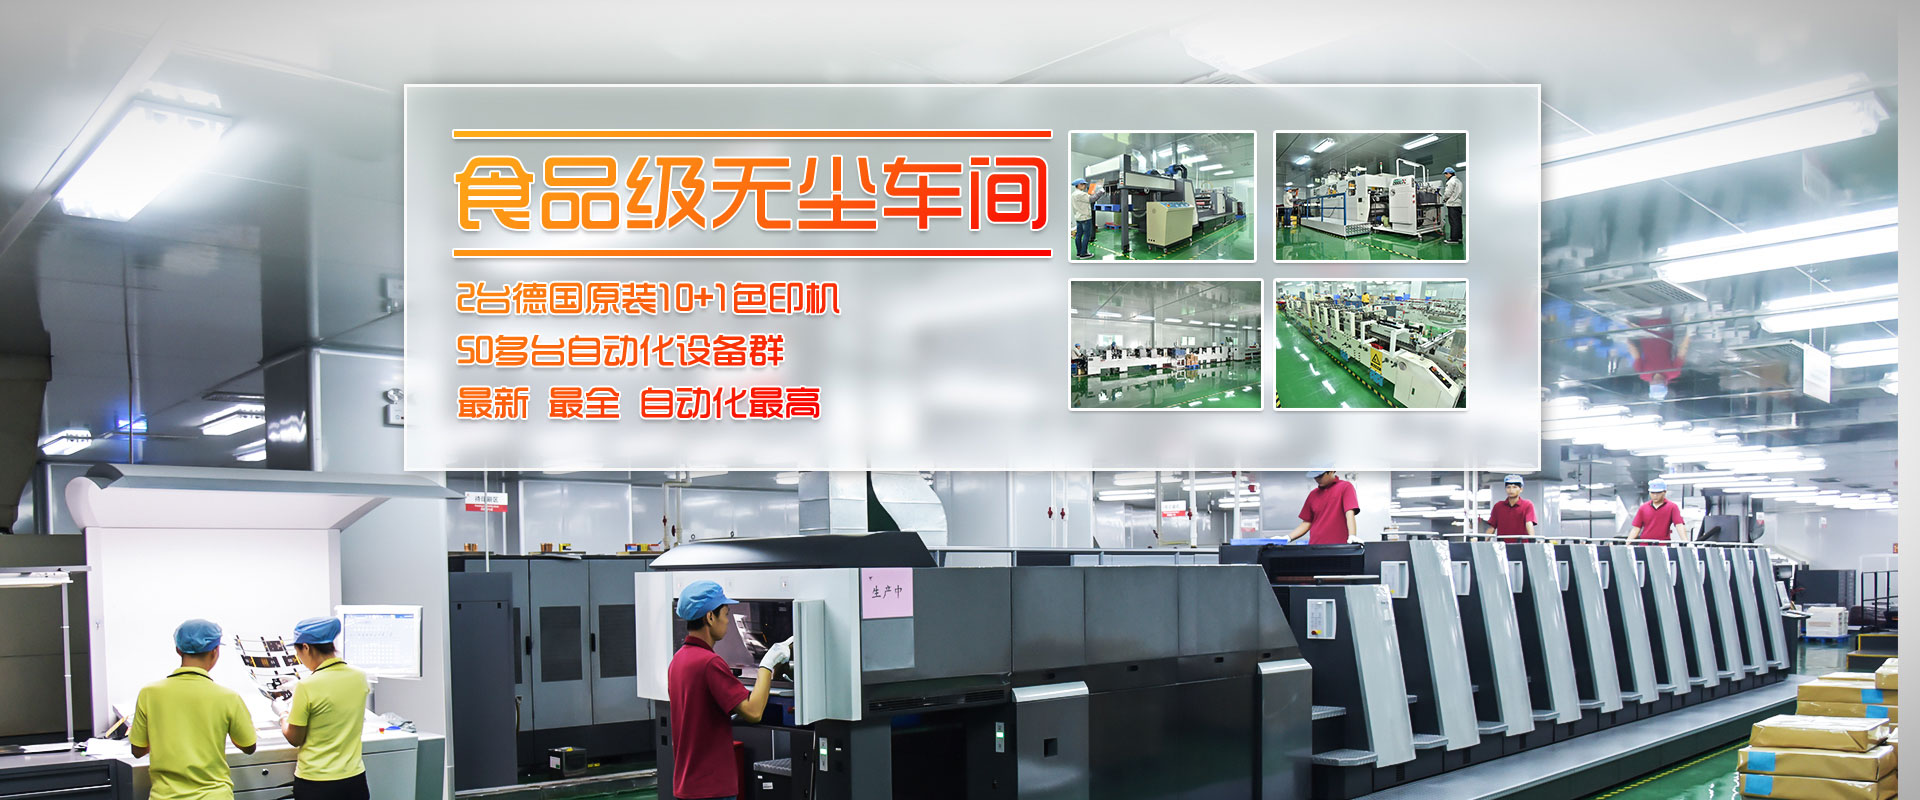 China Printing Company